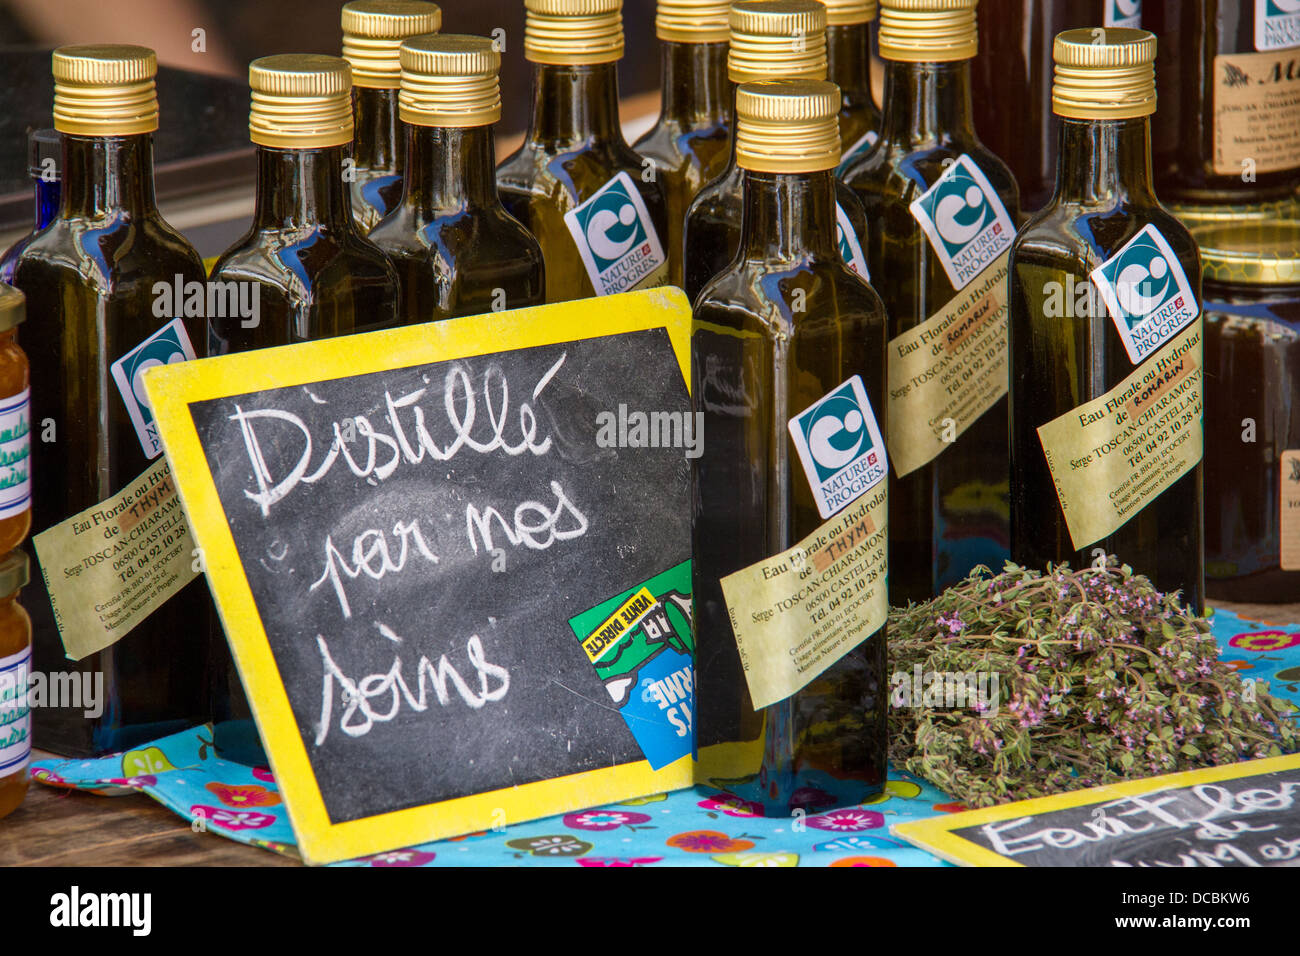 Lokal produzierte Olivenöl - "Made mit liebevoller Sorgfalt". Stockfoto